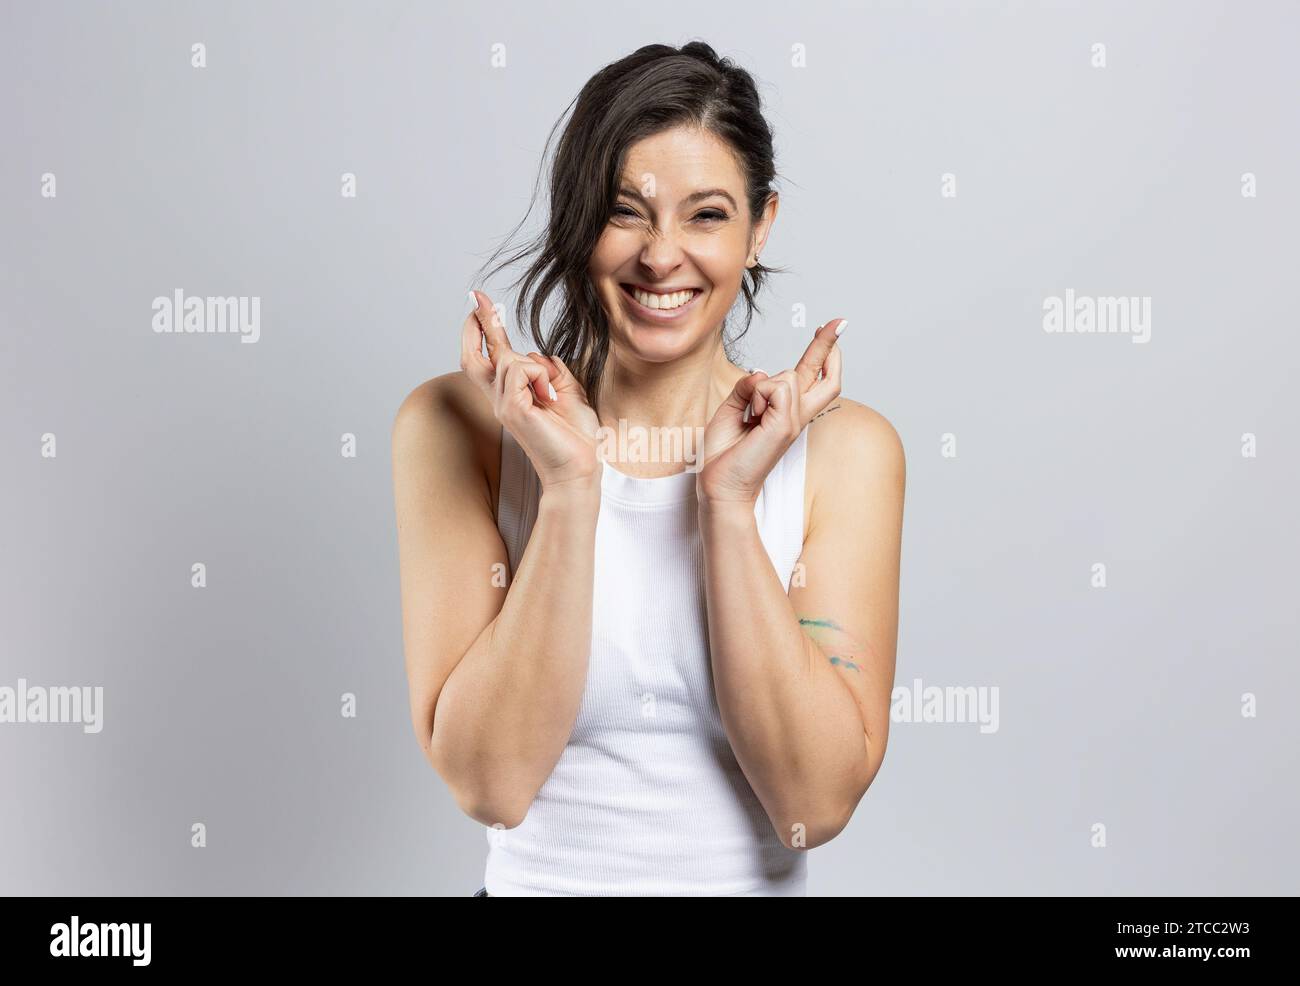 Porträt einer sehr attraktiven Frau, die Erfolg mit gekreuzten Fingern wünscht, isoliert auf grauem Hintergrund Stockfoto